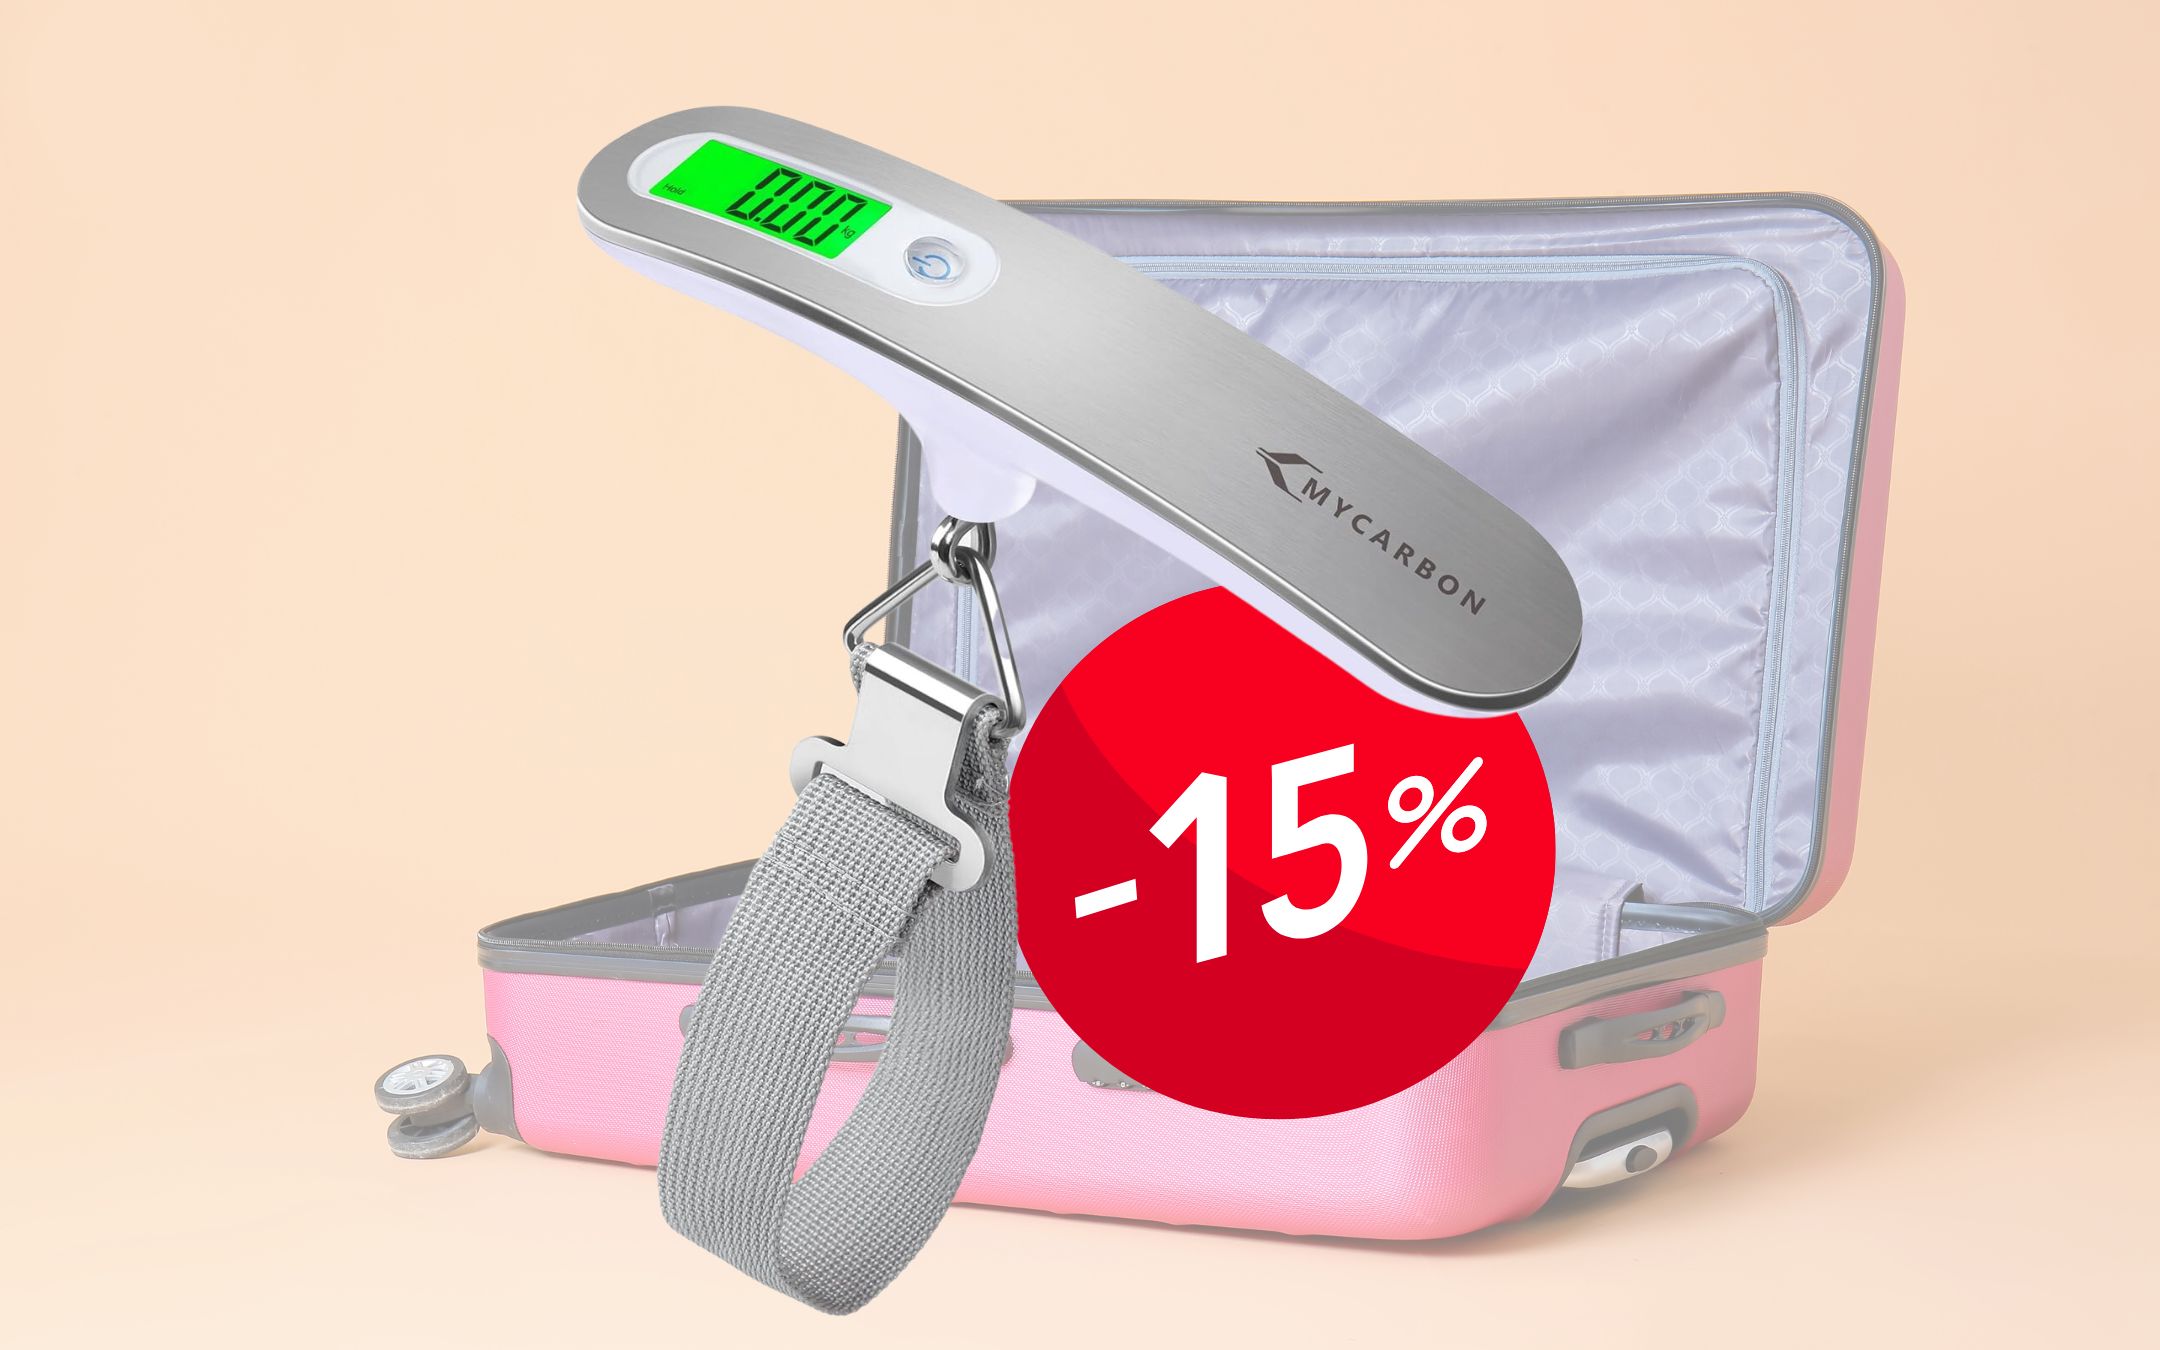 Bilancia pesa valigie elettronica: solo 11€ per viaggiare tranquillo! -  Melablog